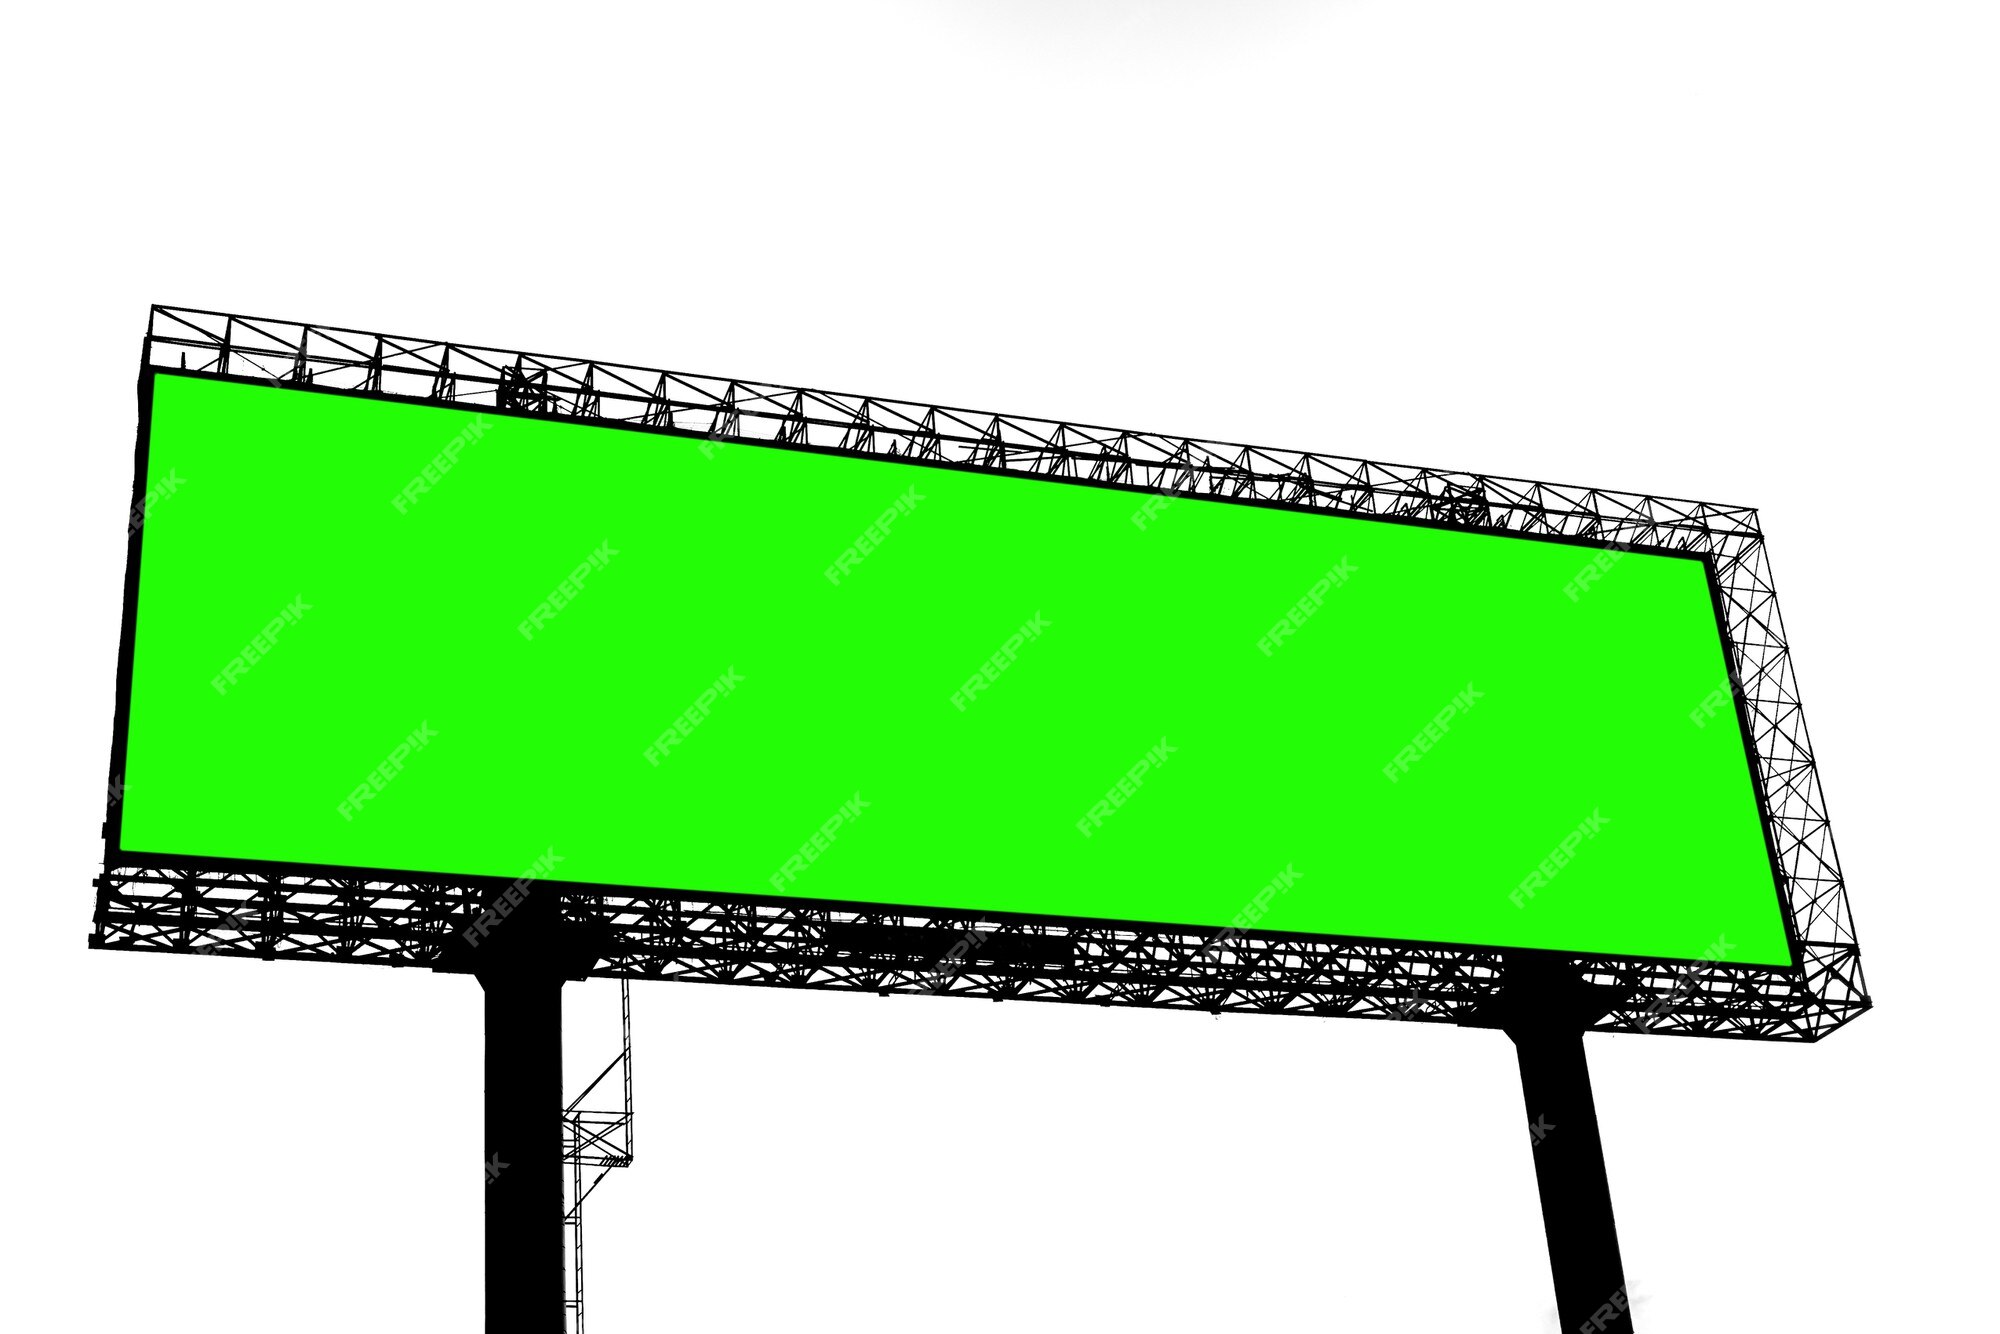 Biển billboard màn hình xanh - Đây là một bức ảnh đầy sáng tạo với nền màn hình xanh chuyên nghiệp. Hãy tham gia để khám phá thế giới đa sắc màu của ảnh chụp này!